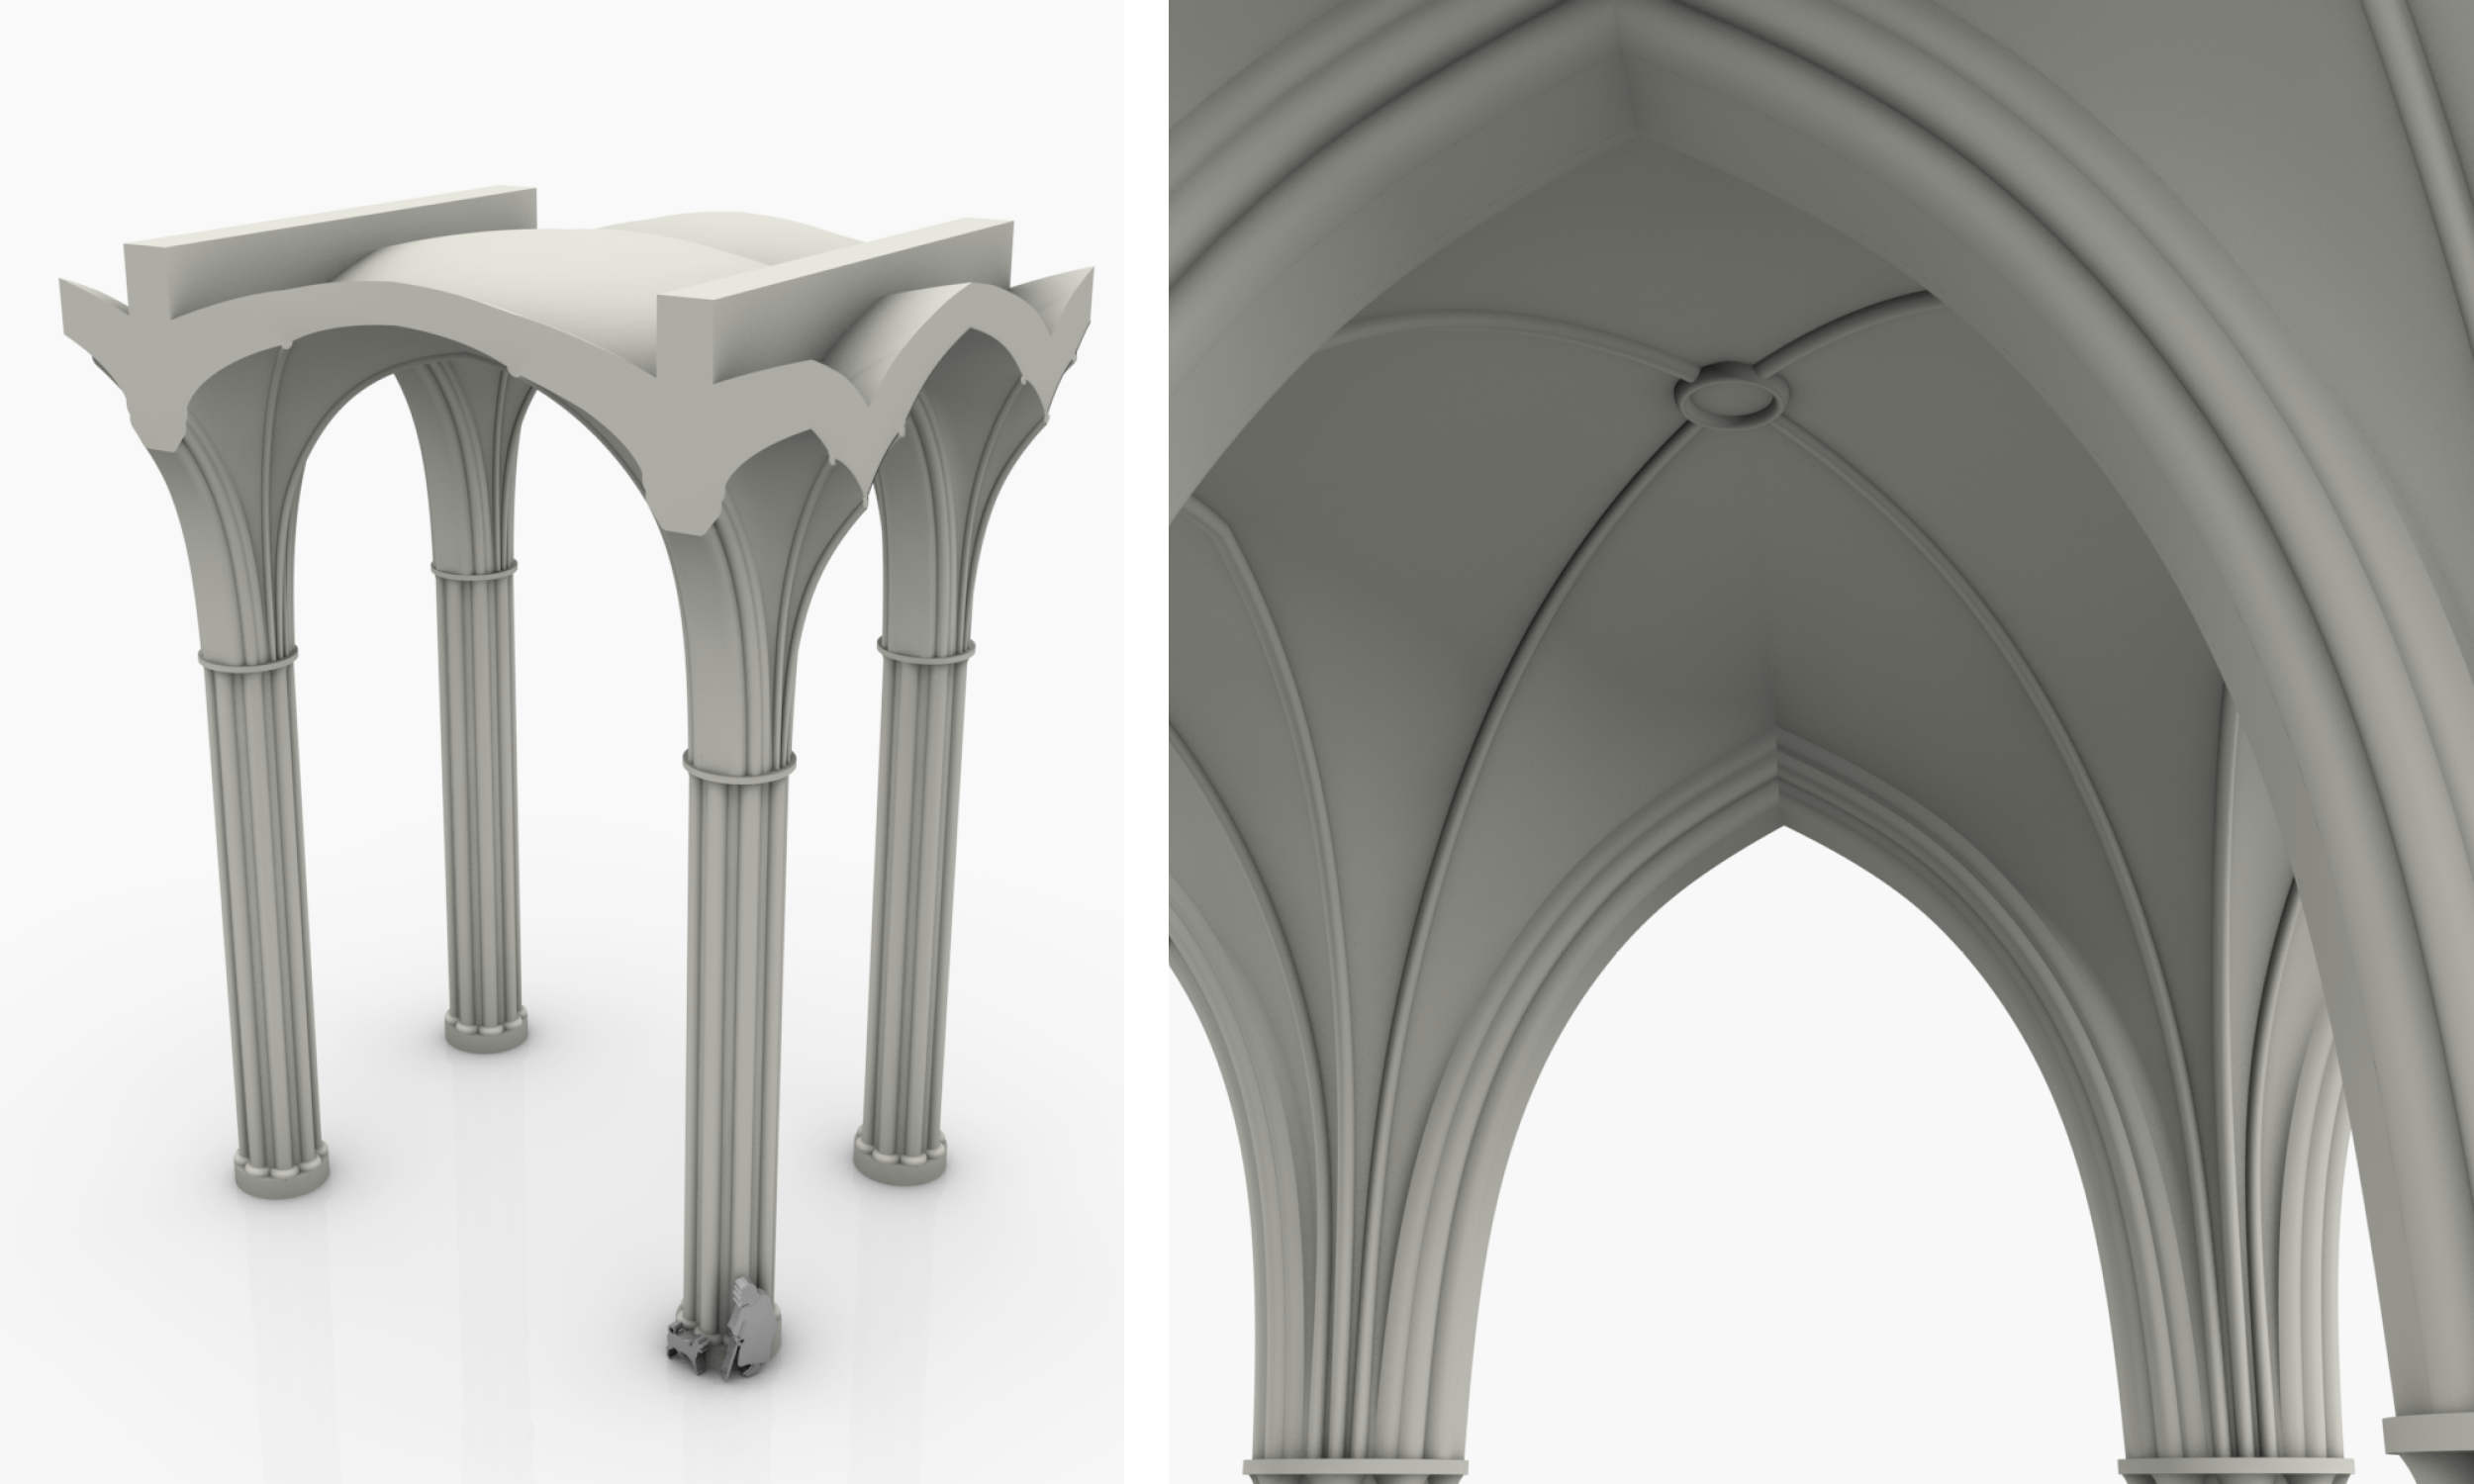 Links: Diese Grafik zeigt das Gewölbemodell der Nikolaikirche. Rechts: Diese Grafik zeigt das Gewölbemodell der Nikolaikirche von unten.